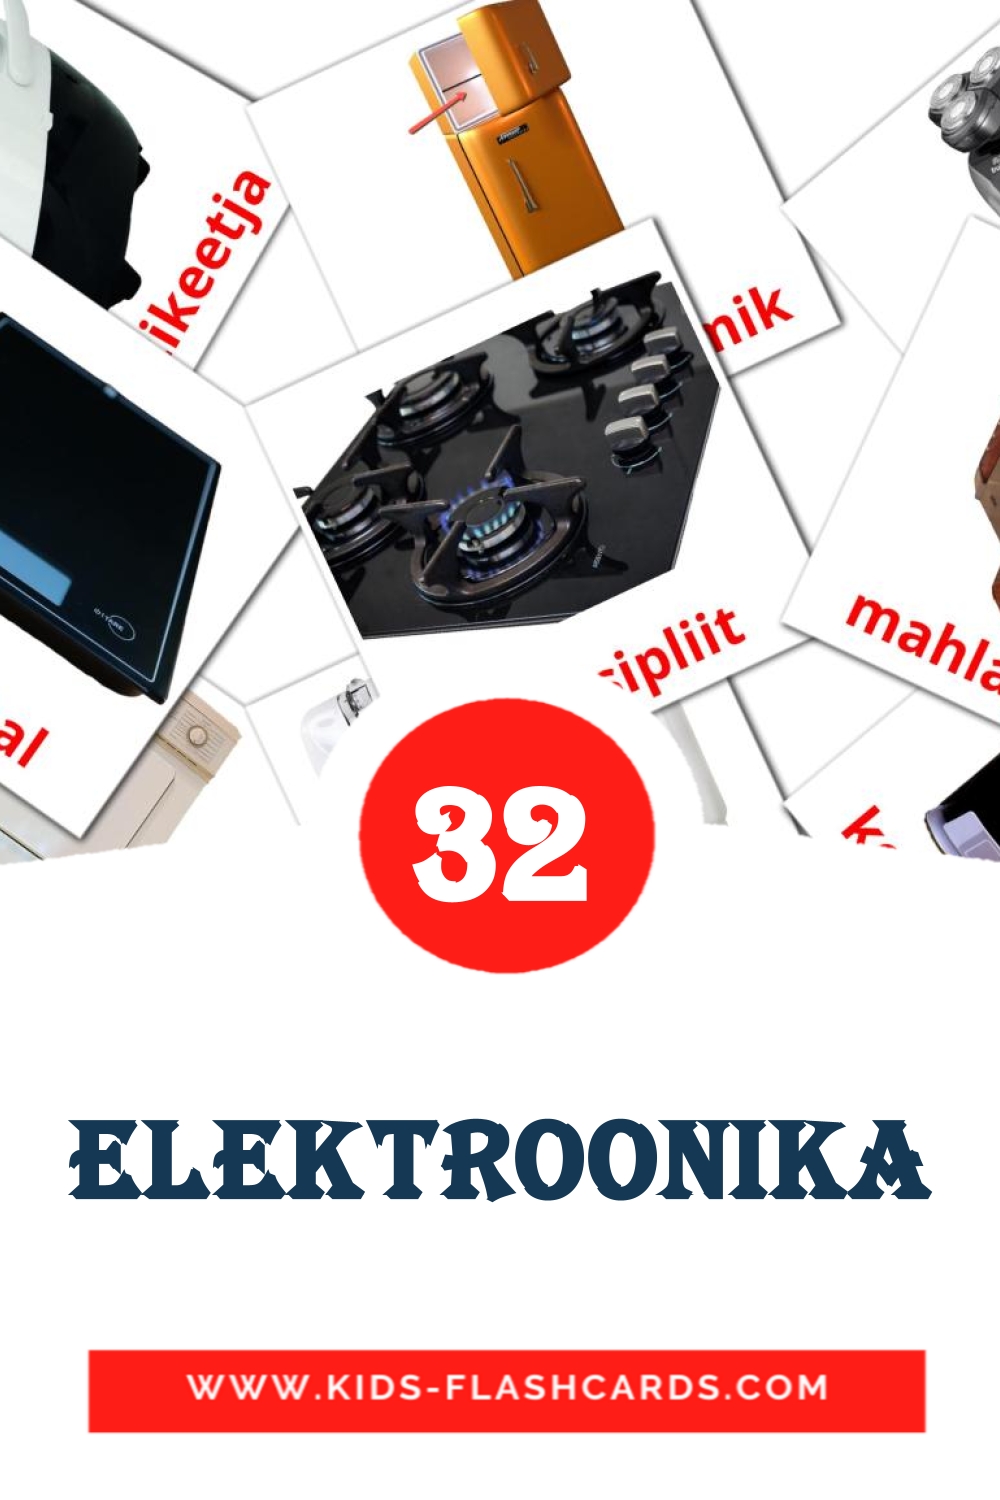 32 Elektroonika fotokaarten voor kleuters in het estlands